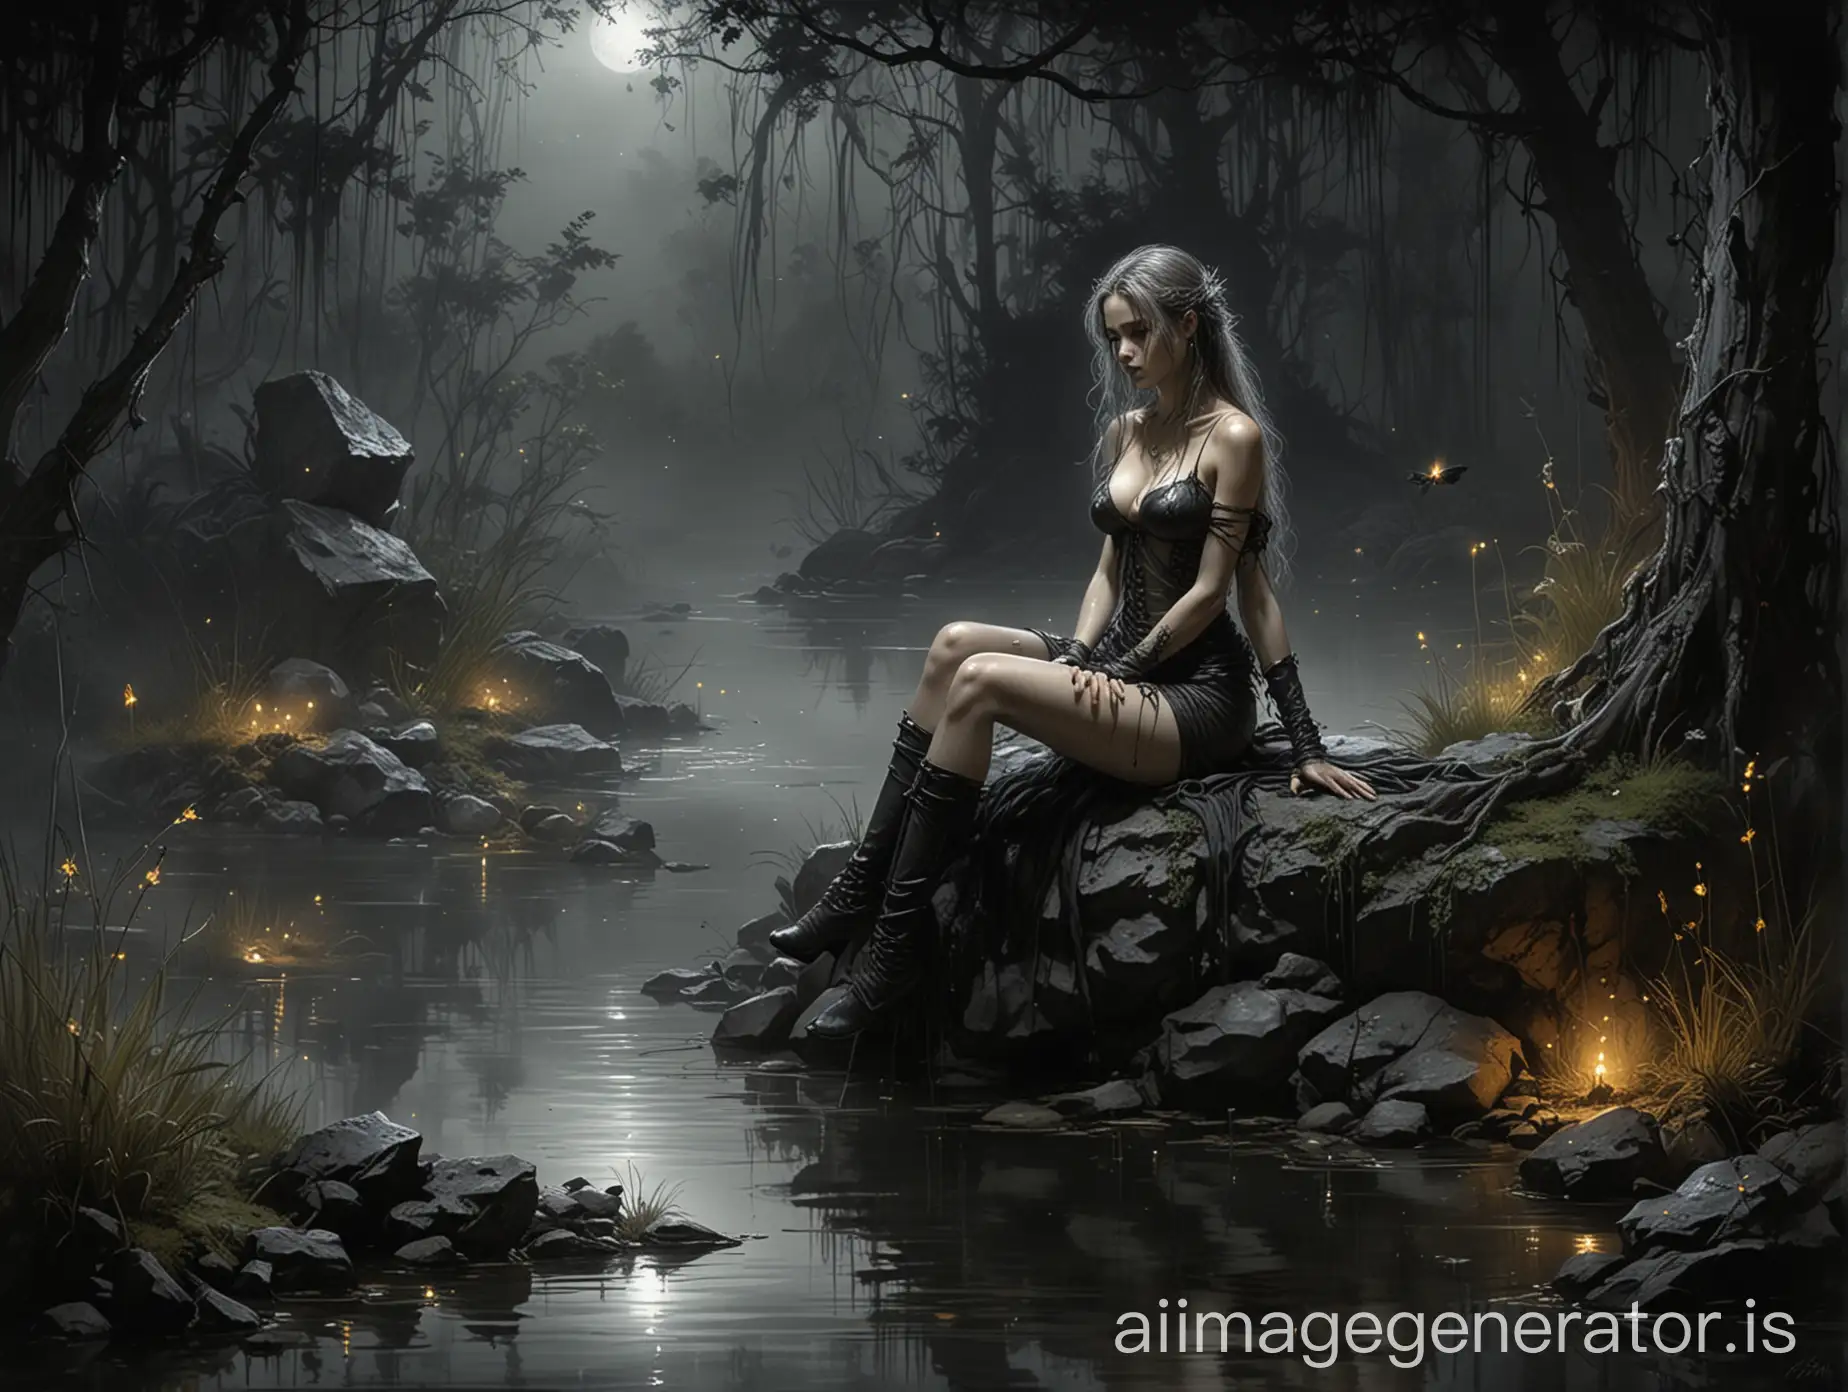 luis royo inspired dark art, dark gloomy gardenscape, sitting on a wet rock by the pond, nightime, fireflies